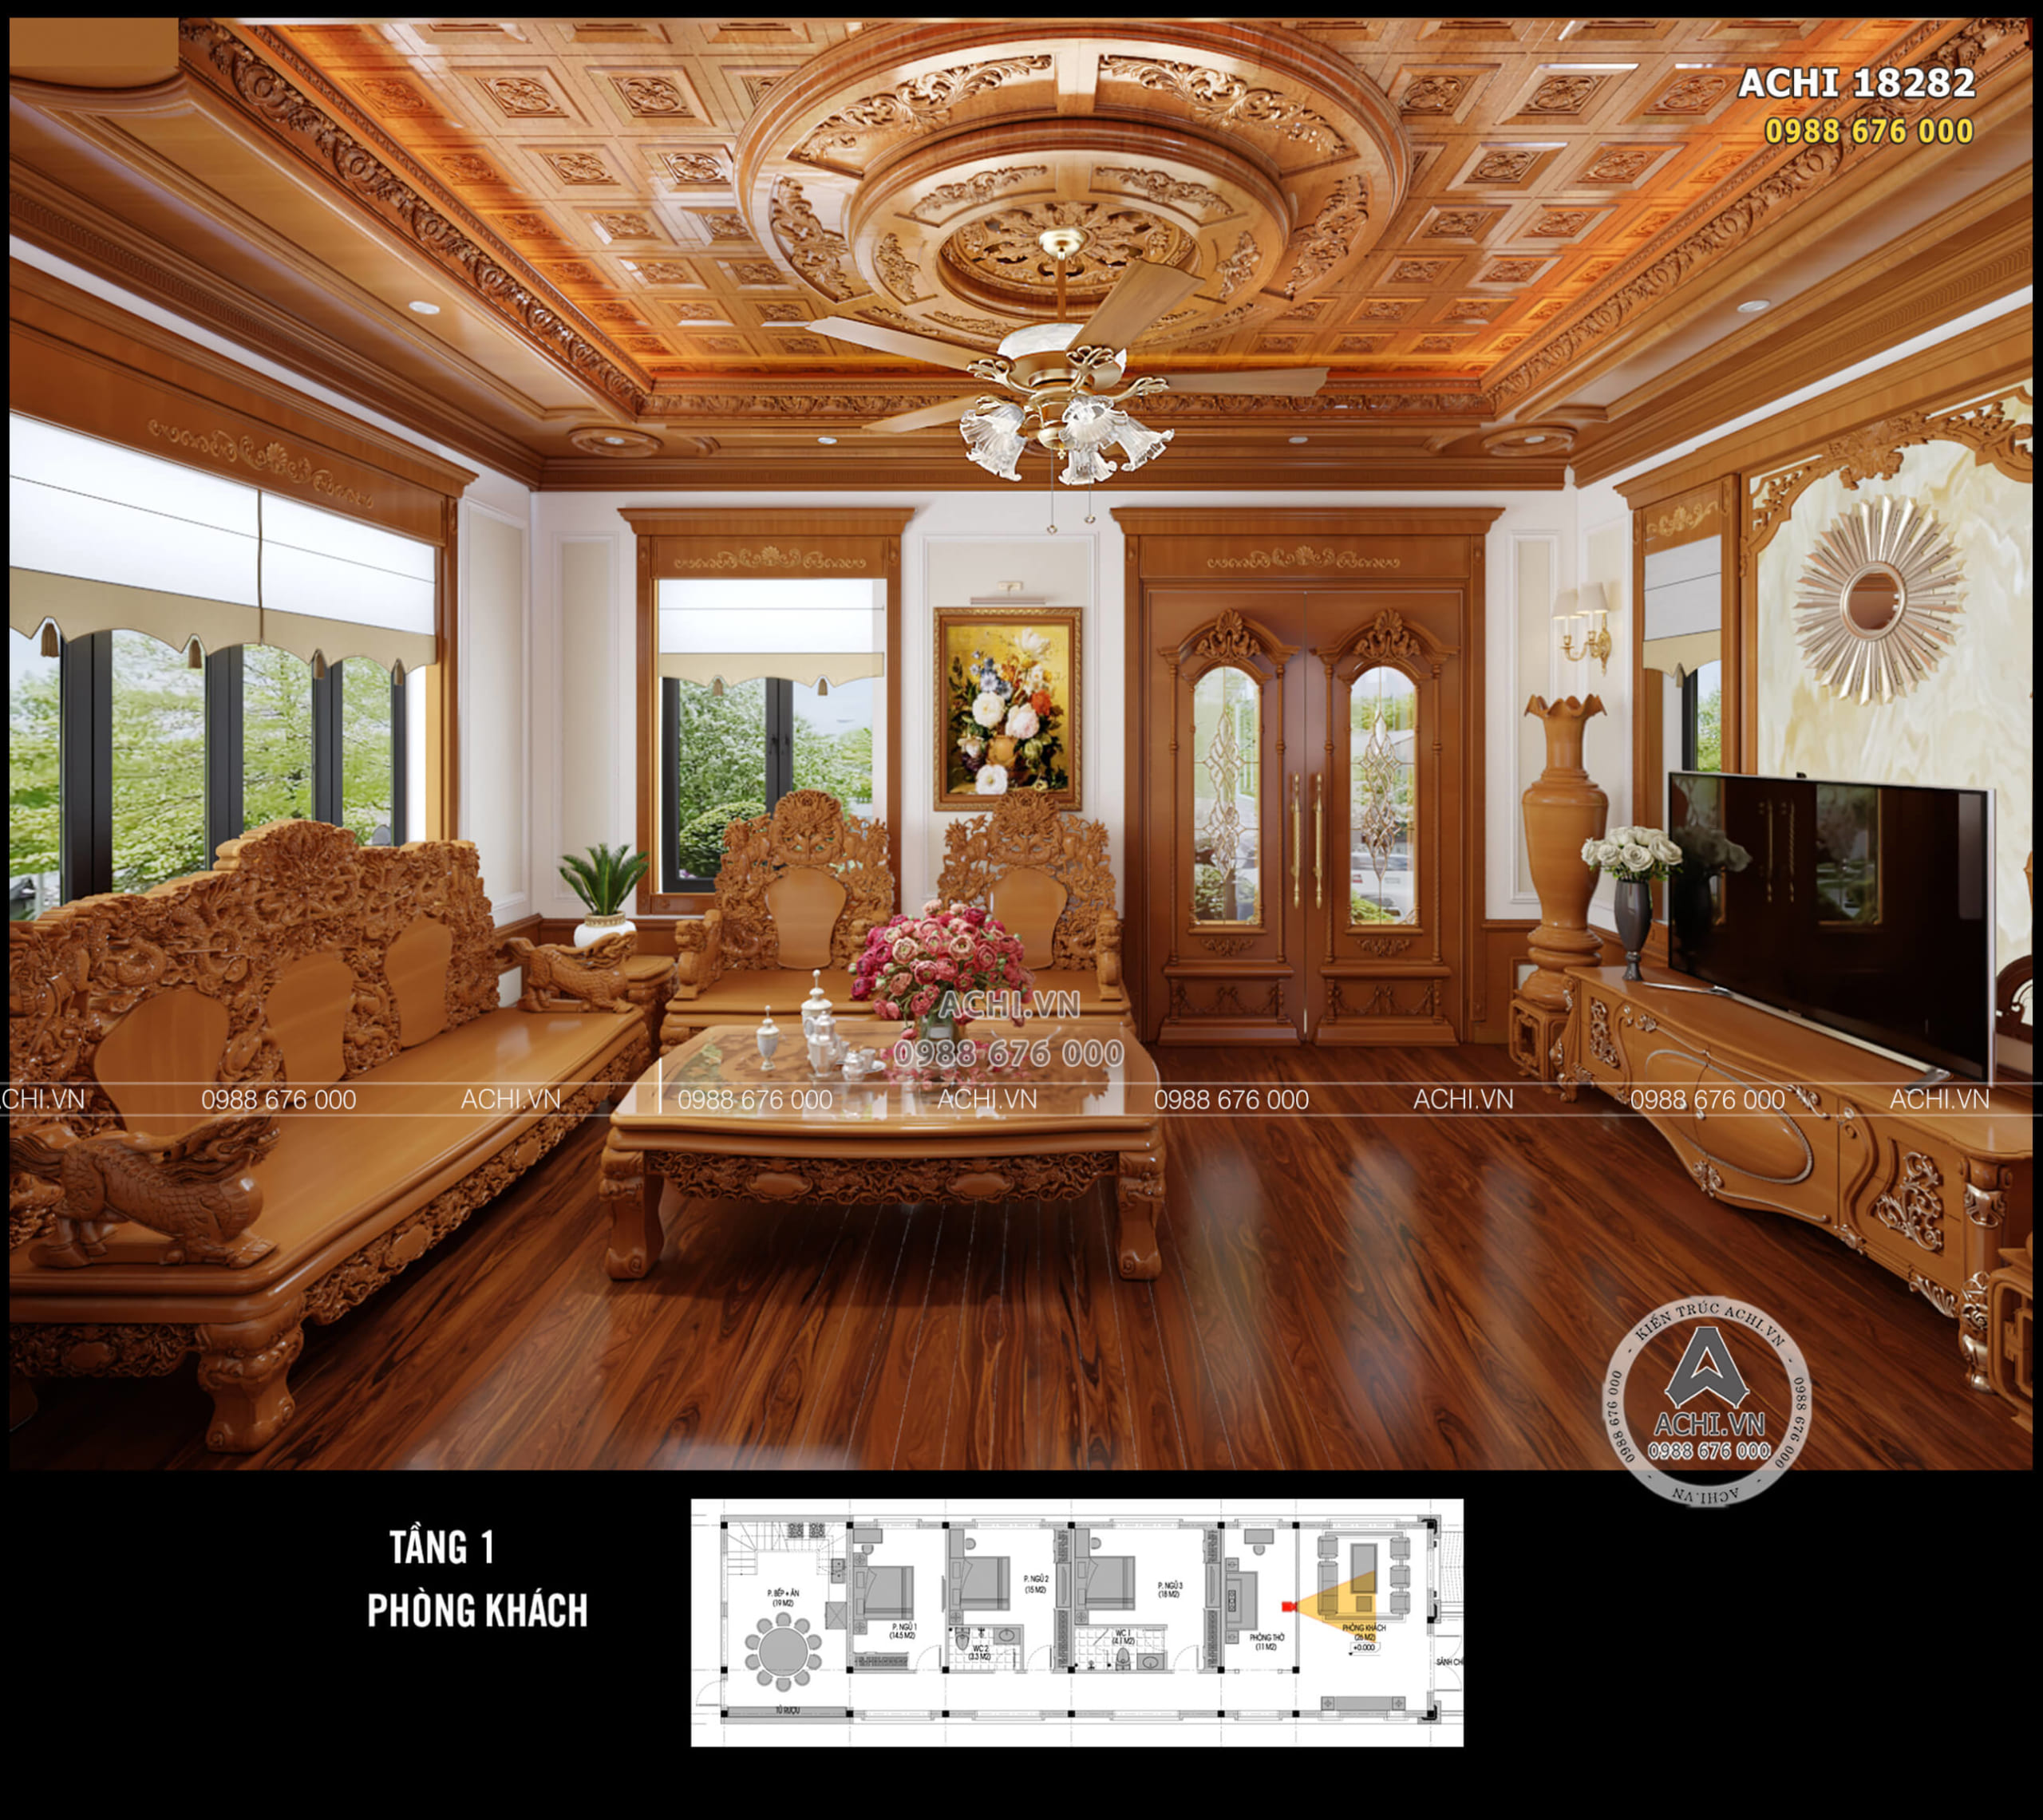 Toàn bộ không gian nội thất phòng khách sử dụng gỗ gõ đỏ cao cấp